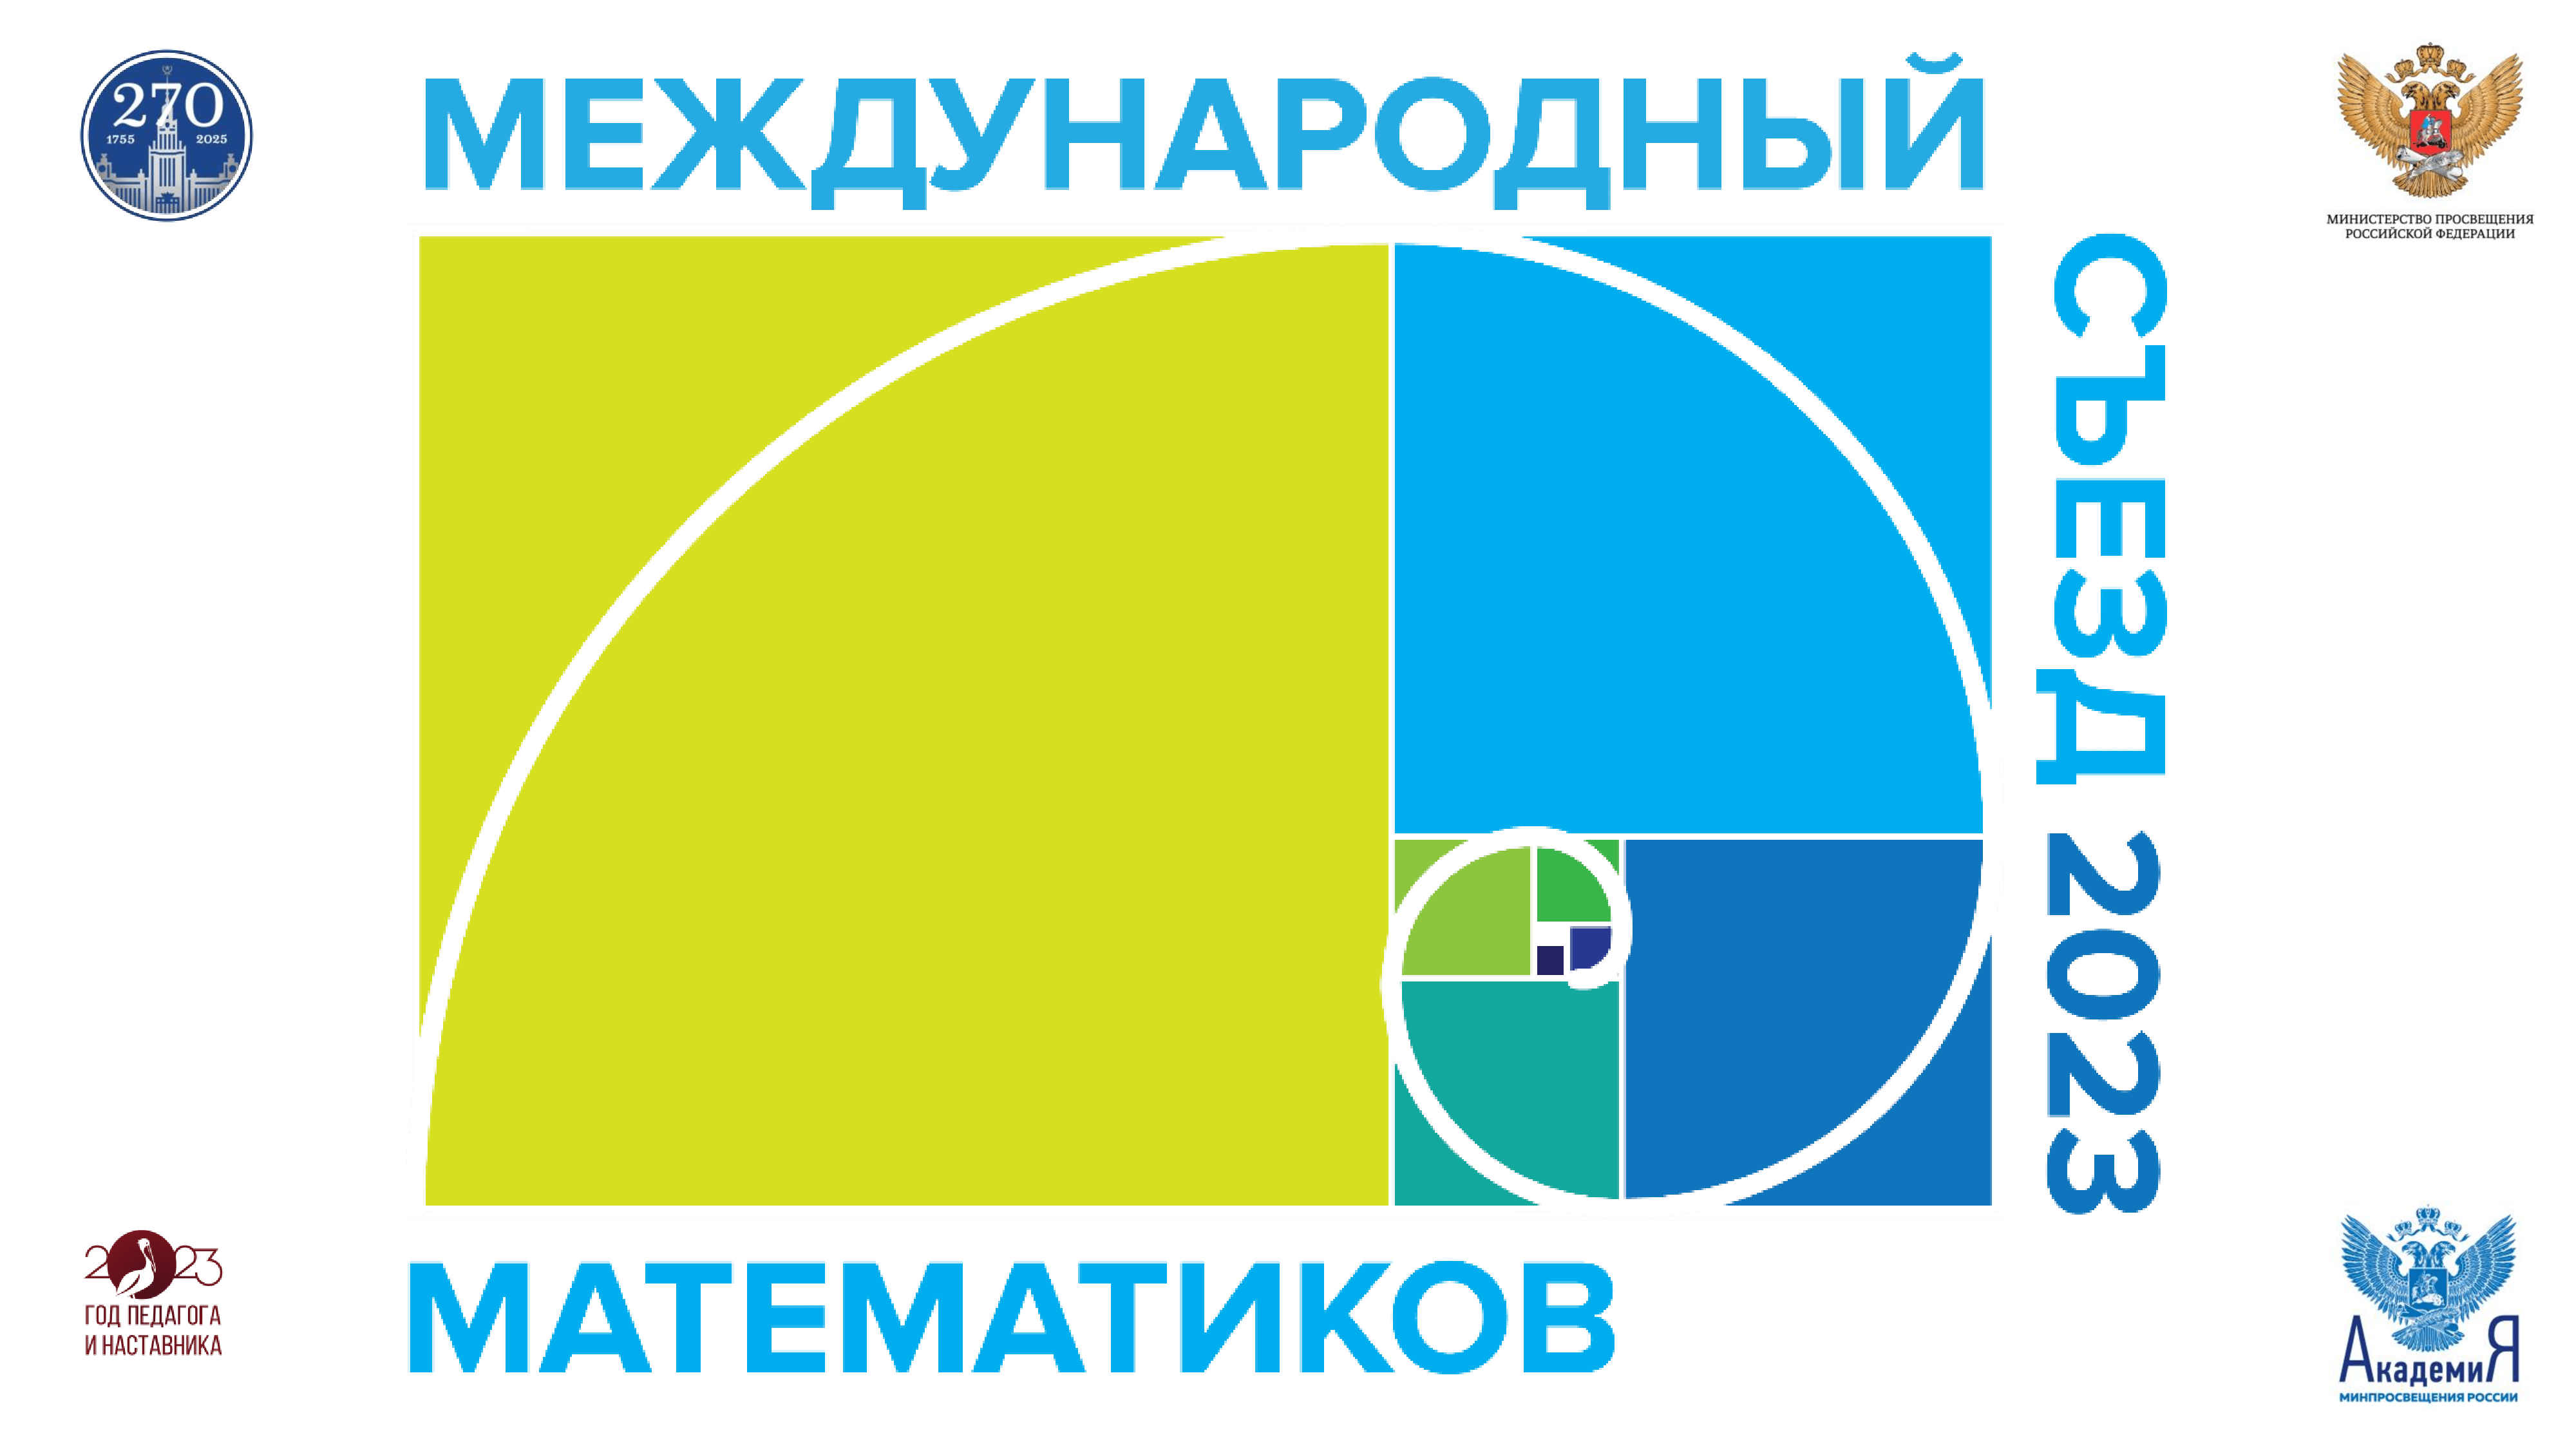 Международный съезд математиков пройдет 23–24 ноября в Москве